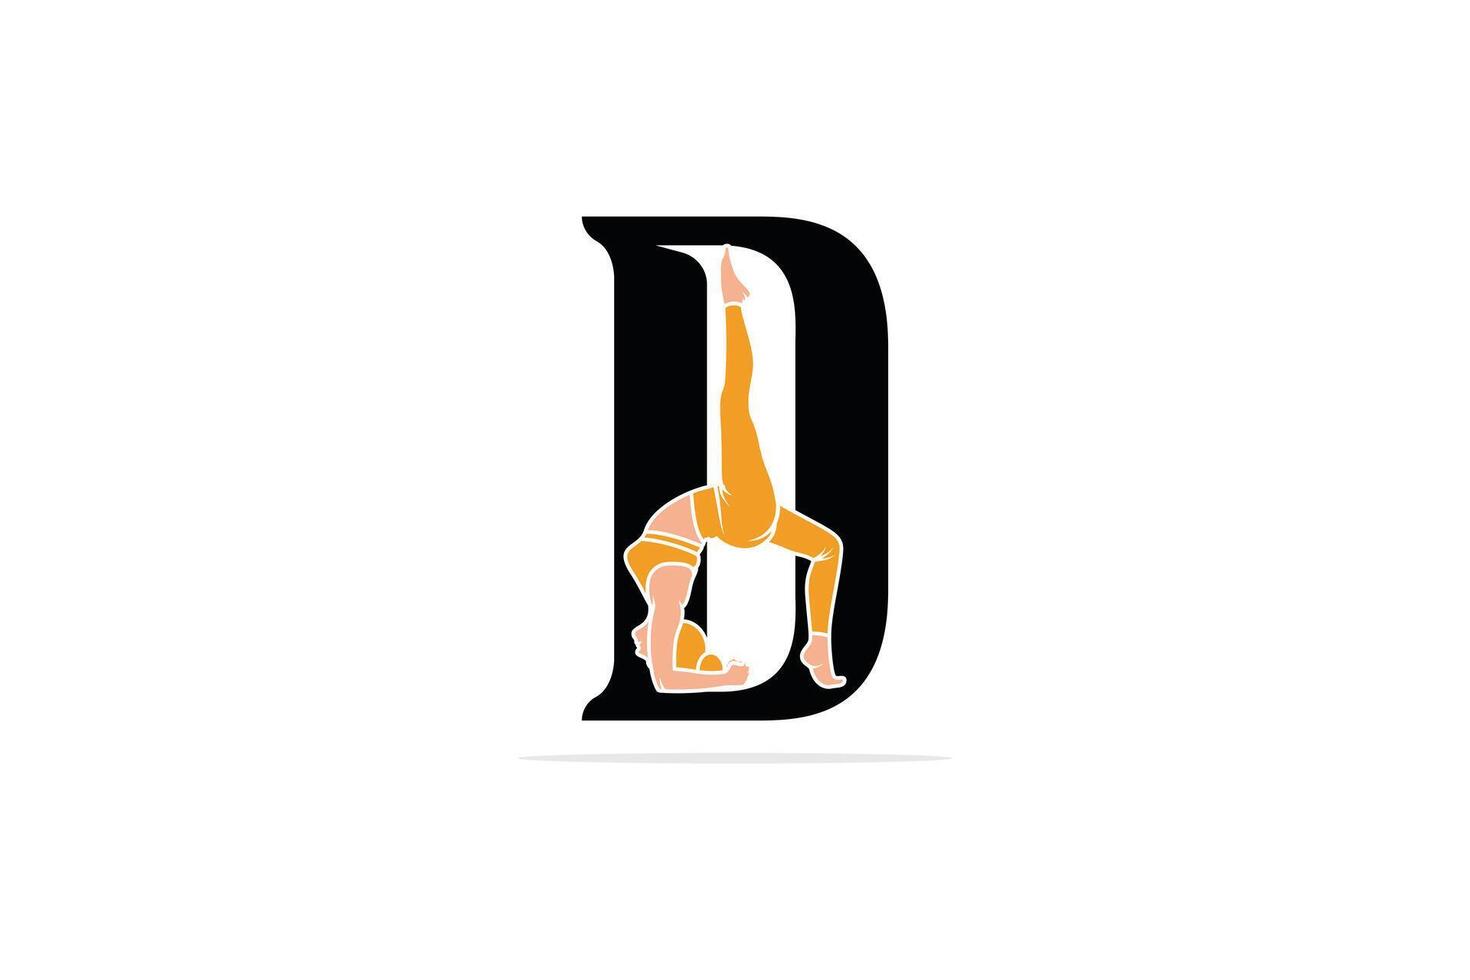 sport- yoga Dames in brief d vector ontwerp. alfabet brief icoon concept. sport- jong Dames aan het doen yoga opdrachten met brief d logo ontwerp.